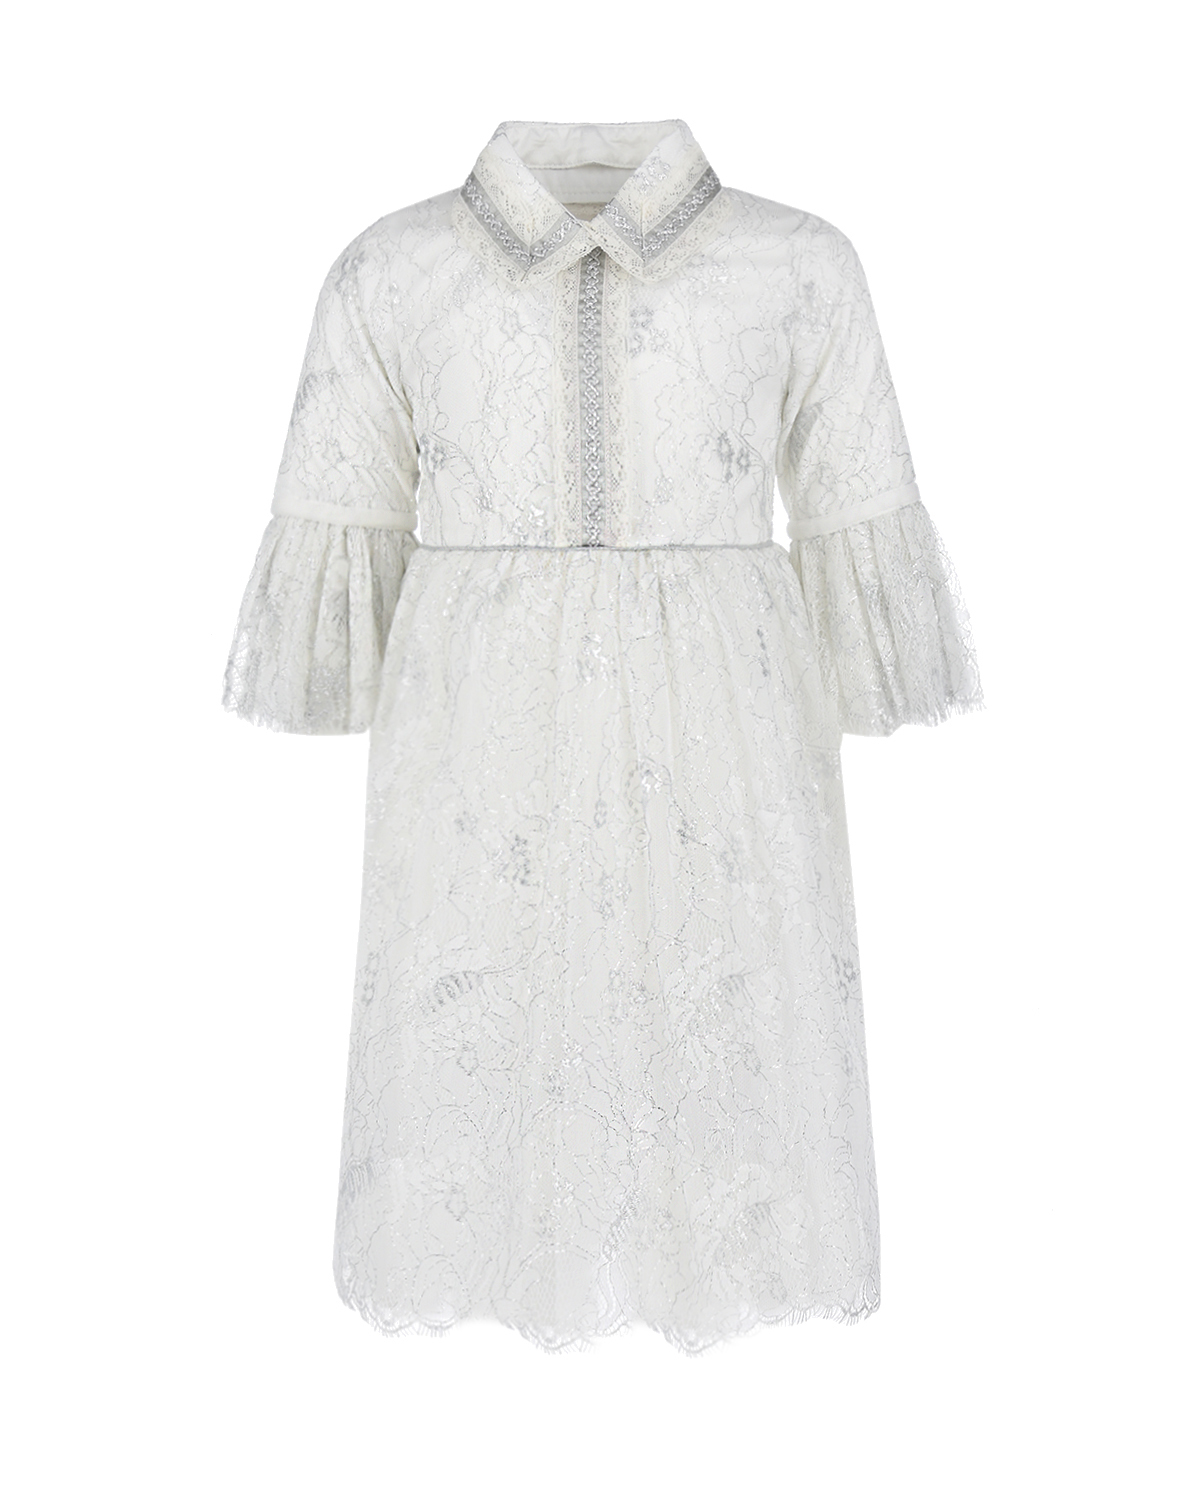 Белое платье с рукавами 3/4 Eirene детское, размер 128, цвет белый Белое платье с рукавами 3/4 Eirene детское - фото 1